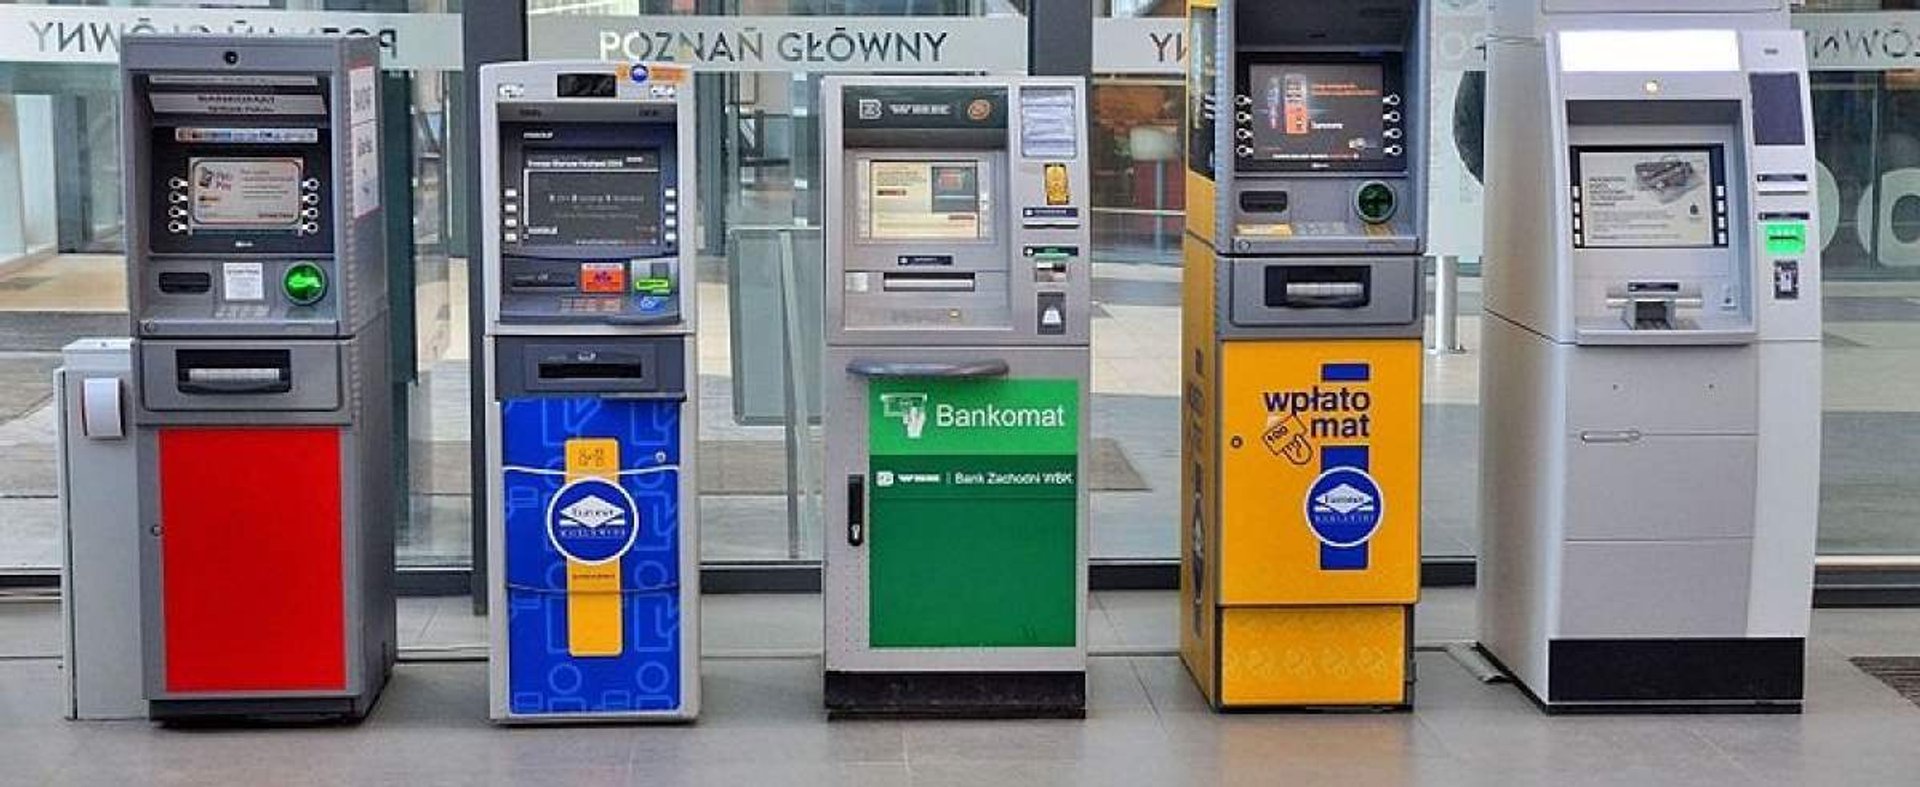 Korzystający z bankomatu mogą trafić na niespodziewany banknot